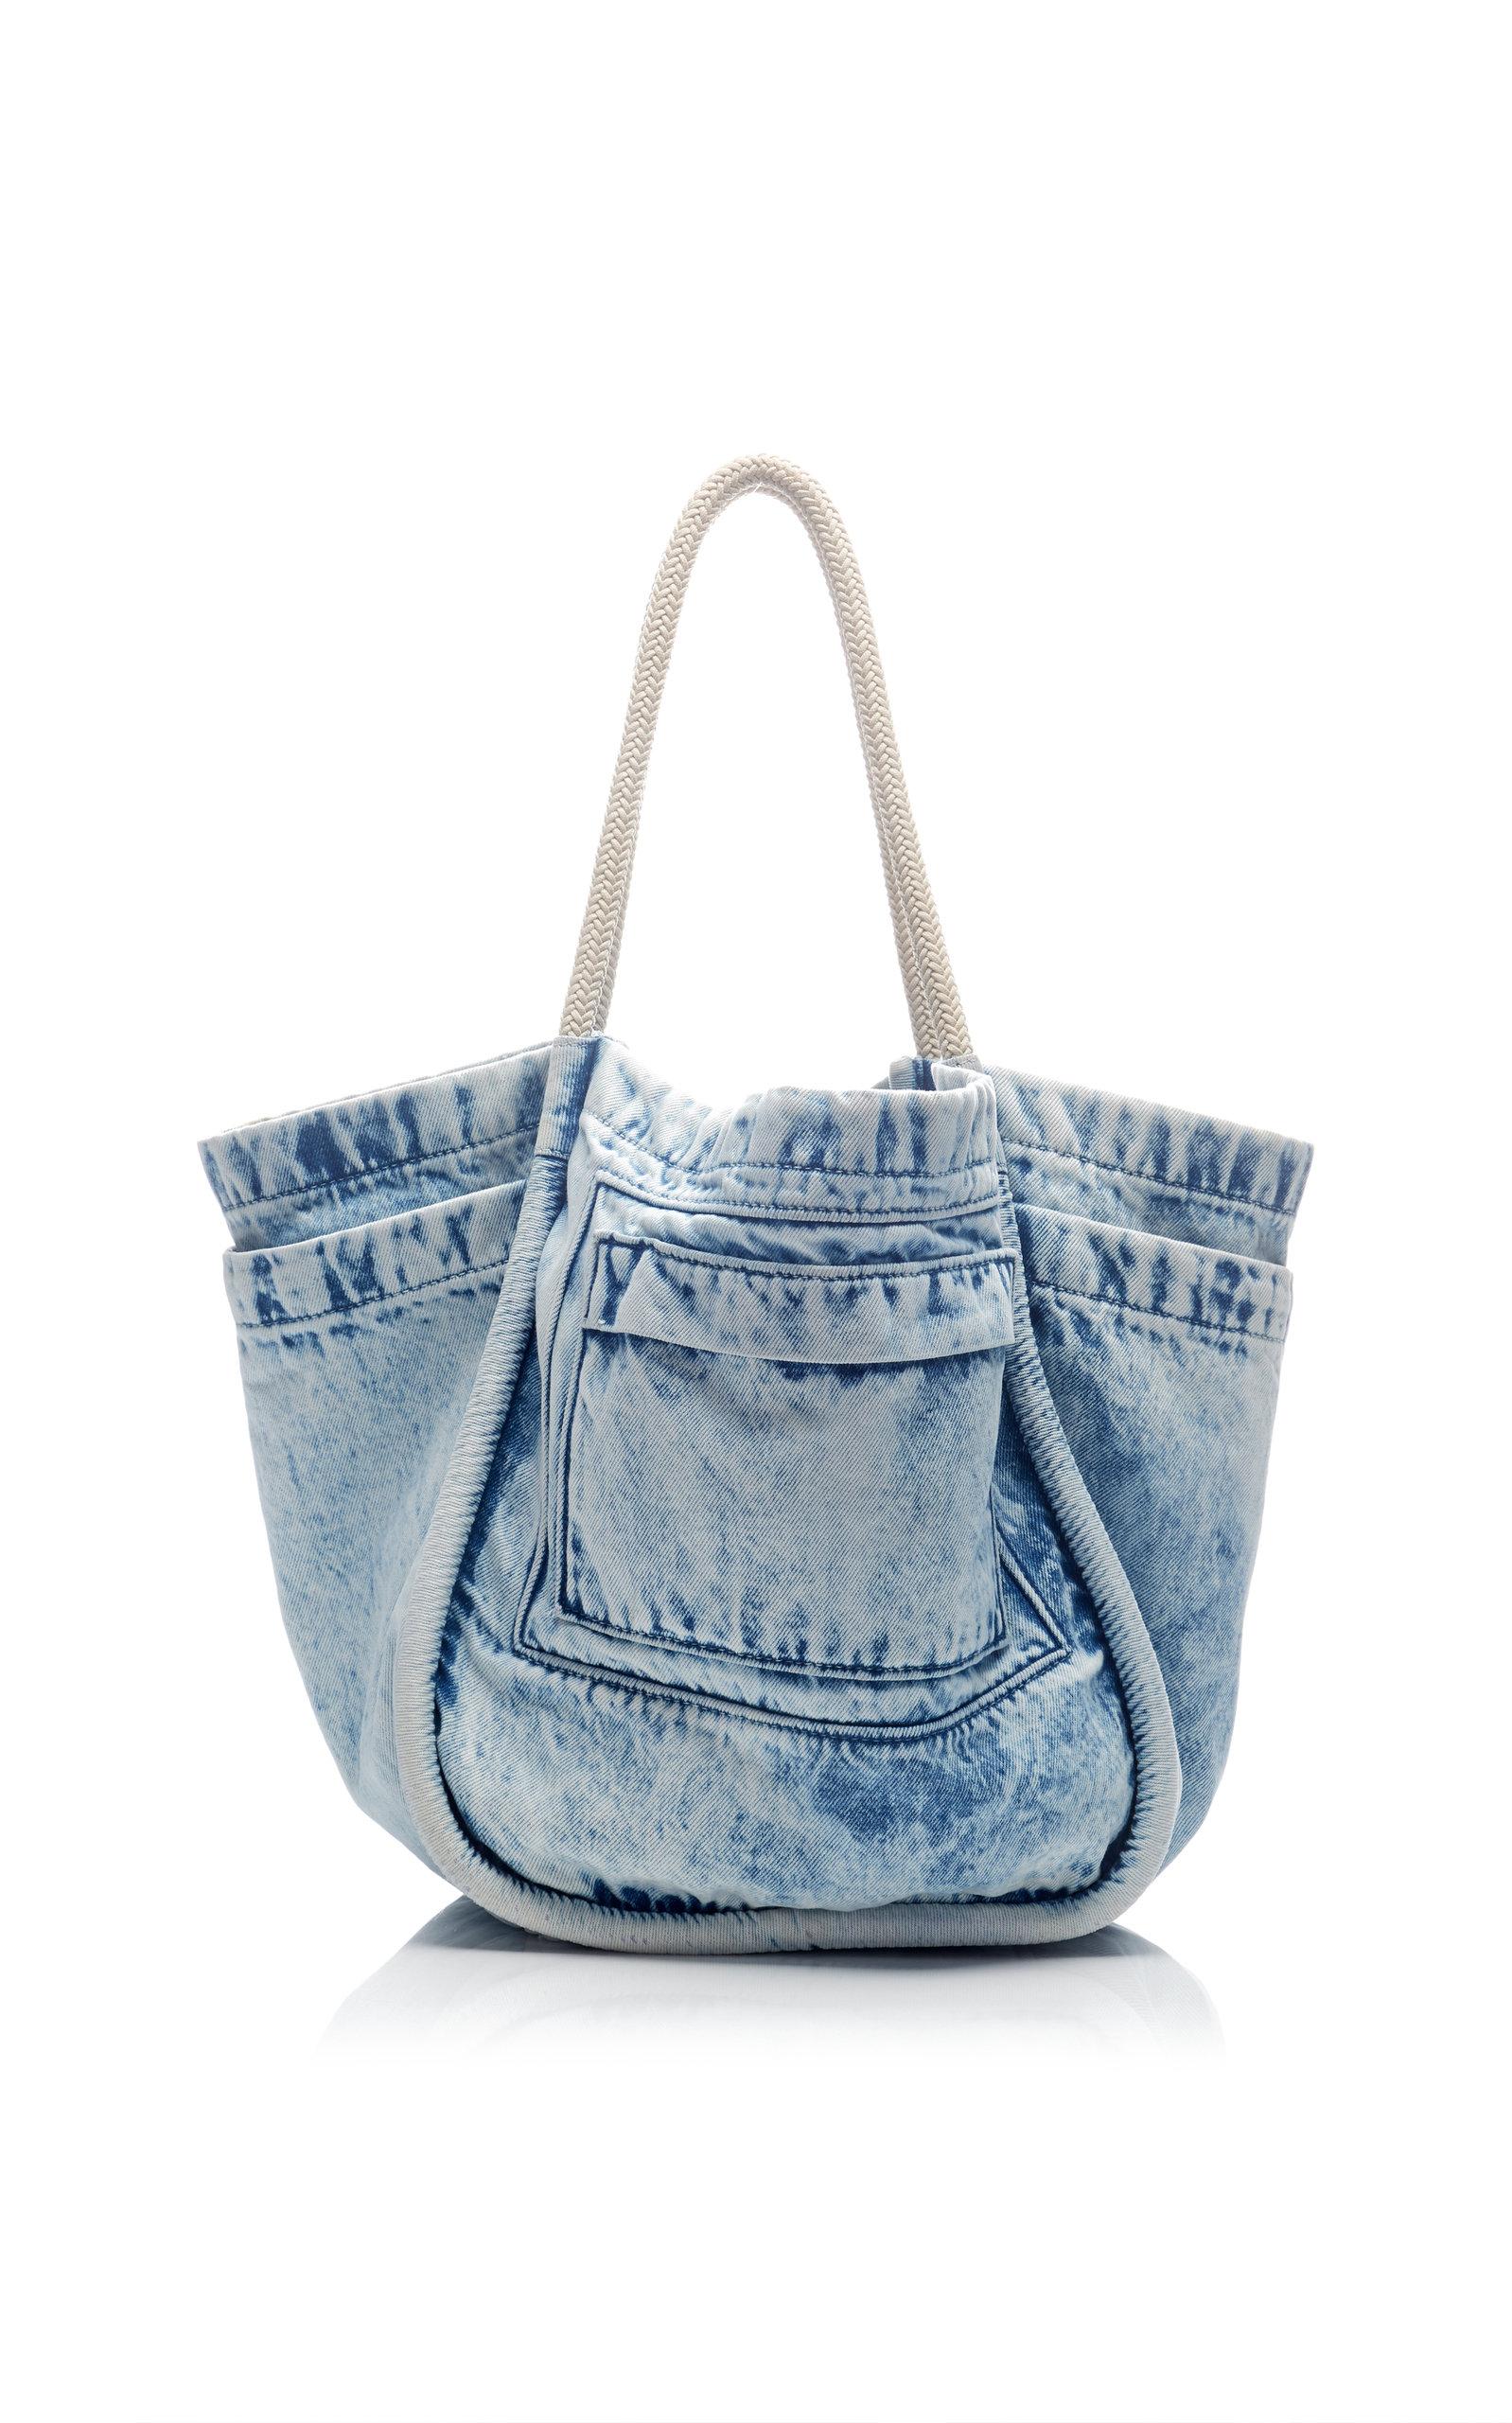 Proenza Schouler Large Denim Tote Bag in Blue Pattern (Blue) - Lyst